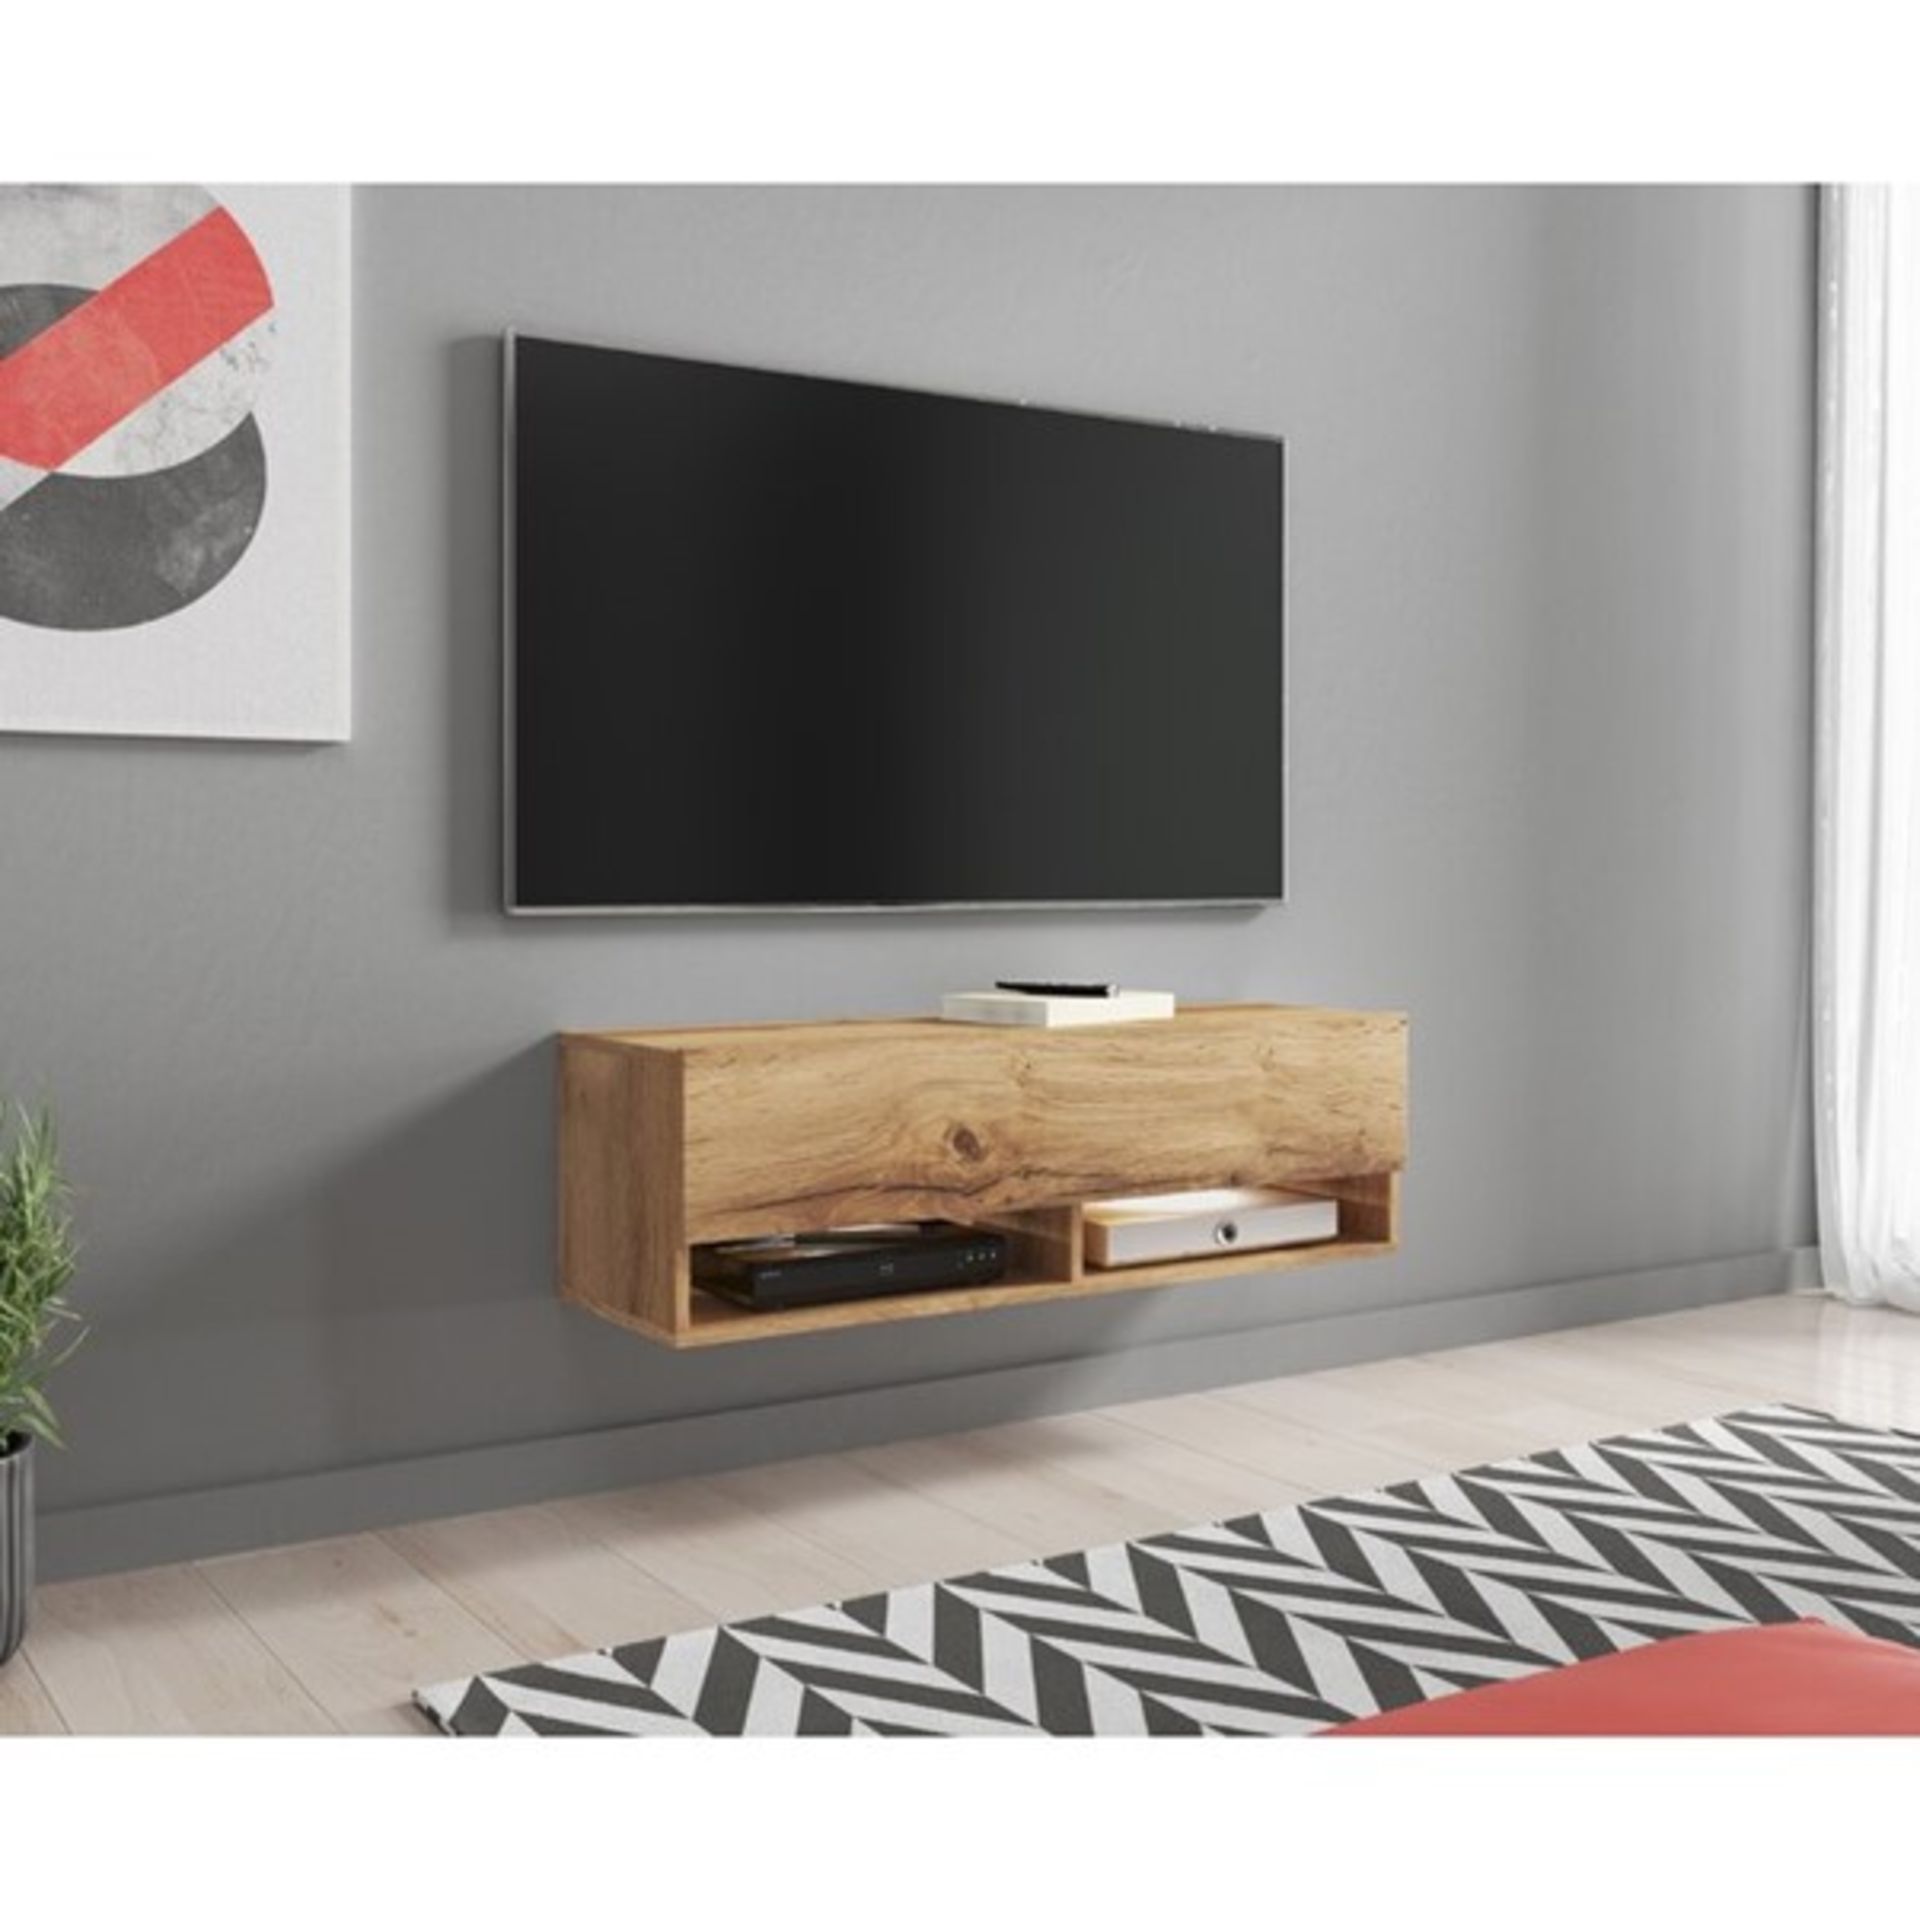 RRP £118.99 - Dortch TV Stand for TVs up to 78" - 100cm W x 30cm H x 31cm D